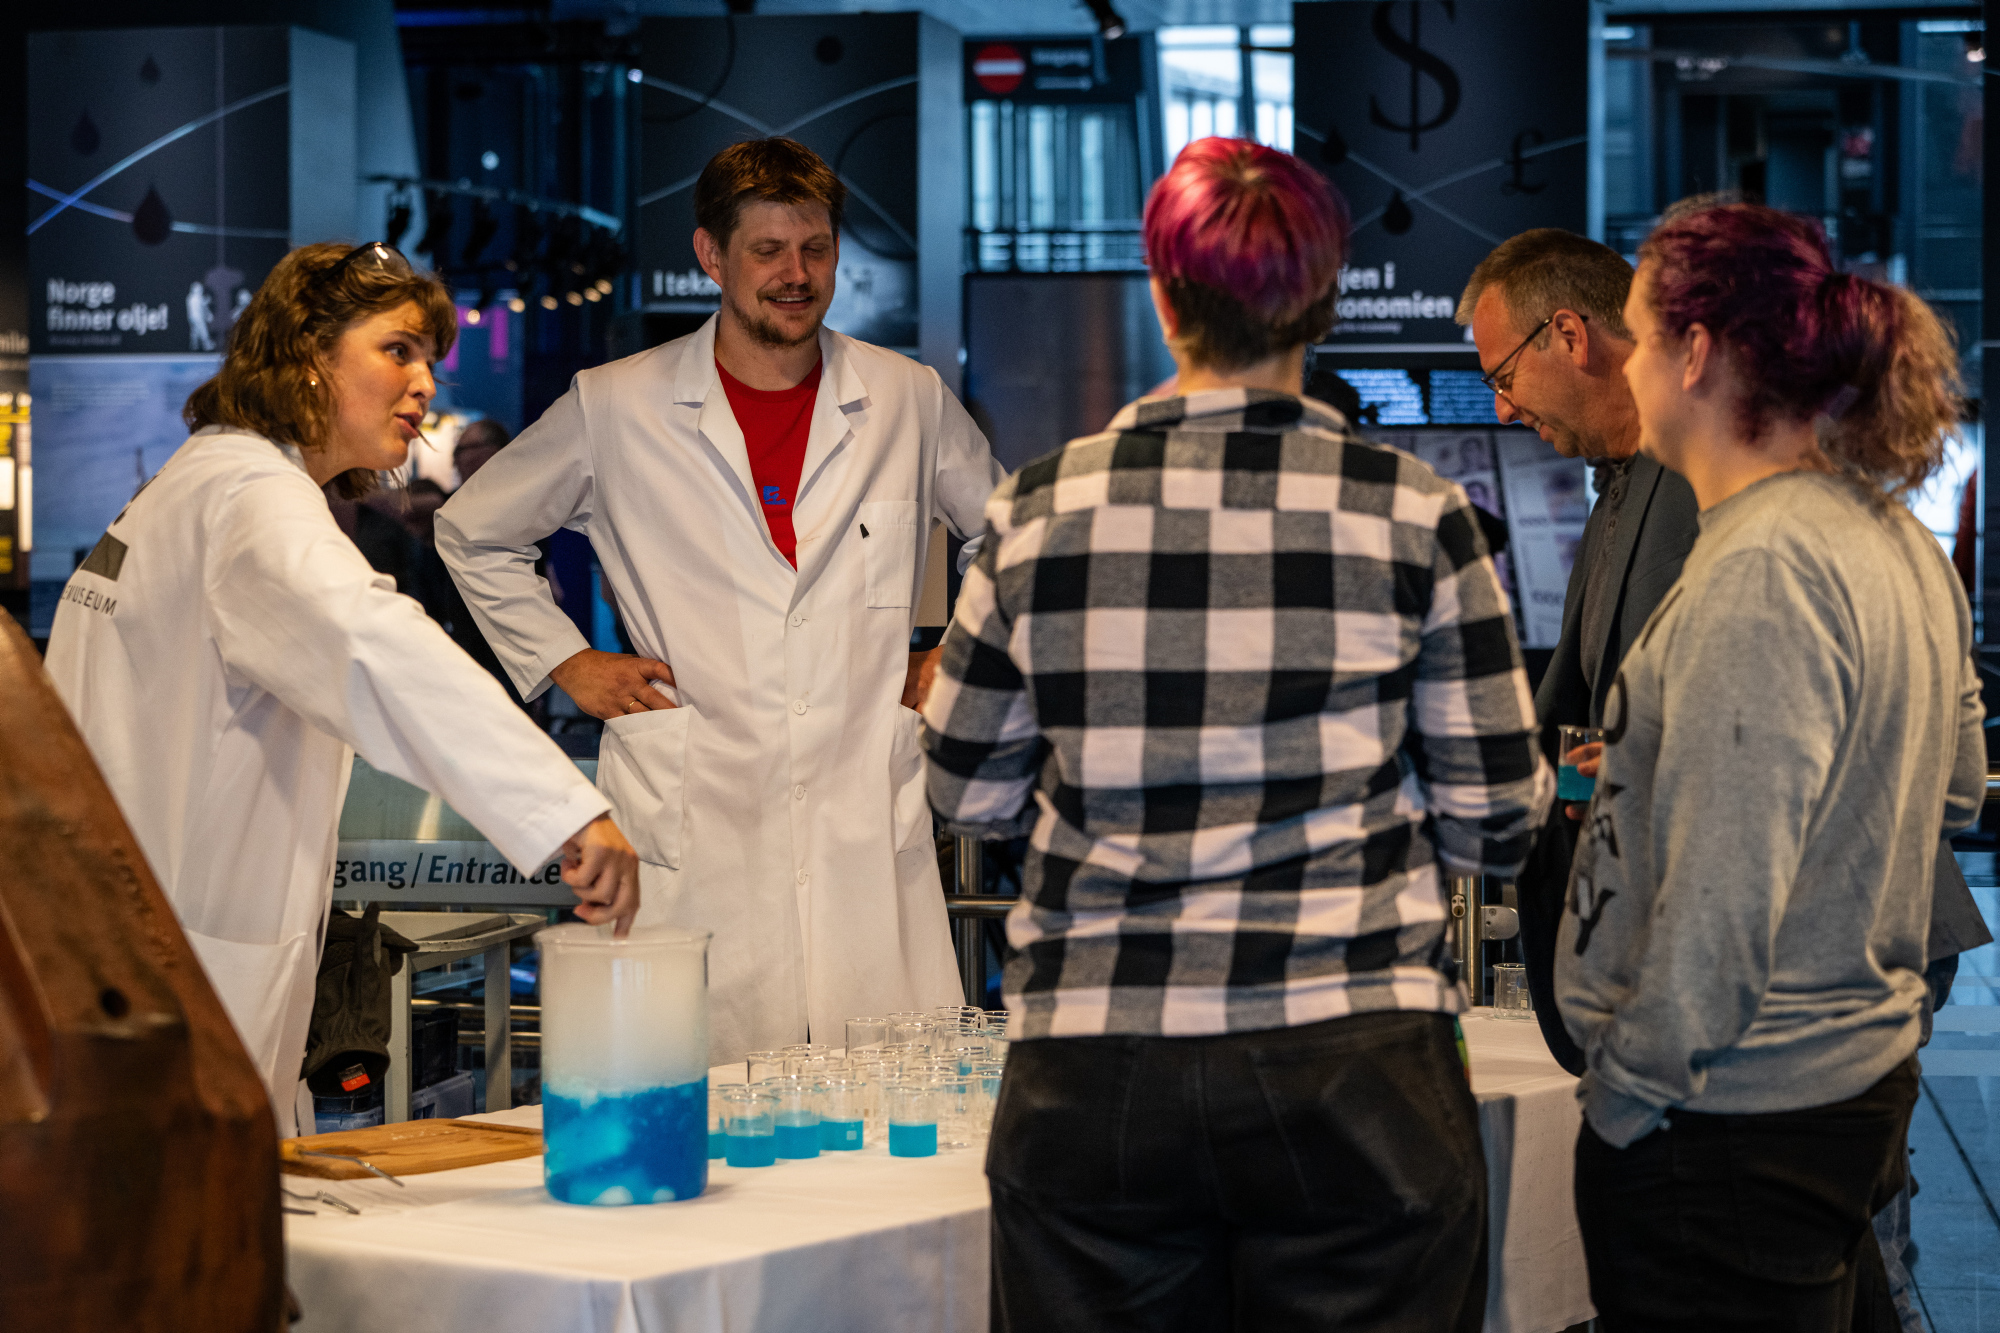 To personer i hvite labbfrakker serverer blå drikke i reagenskopper til publikummere